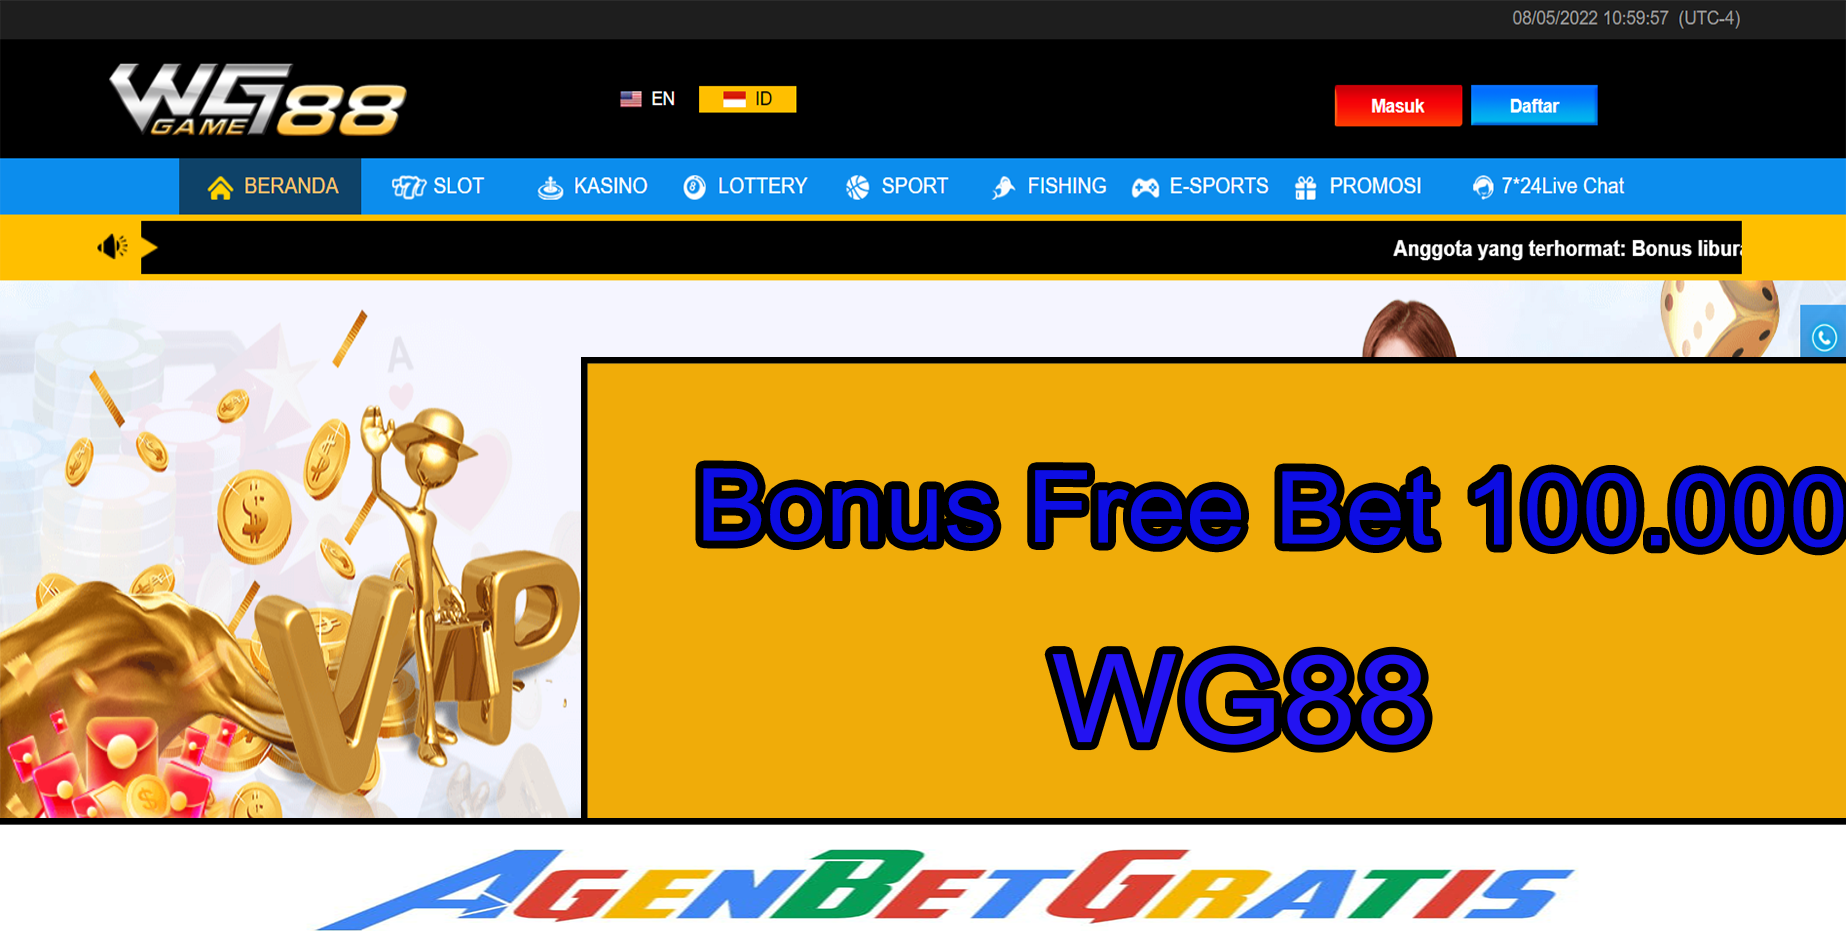 WG88 - Bonus FreeBet 100.000